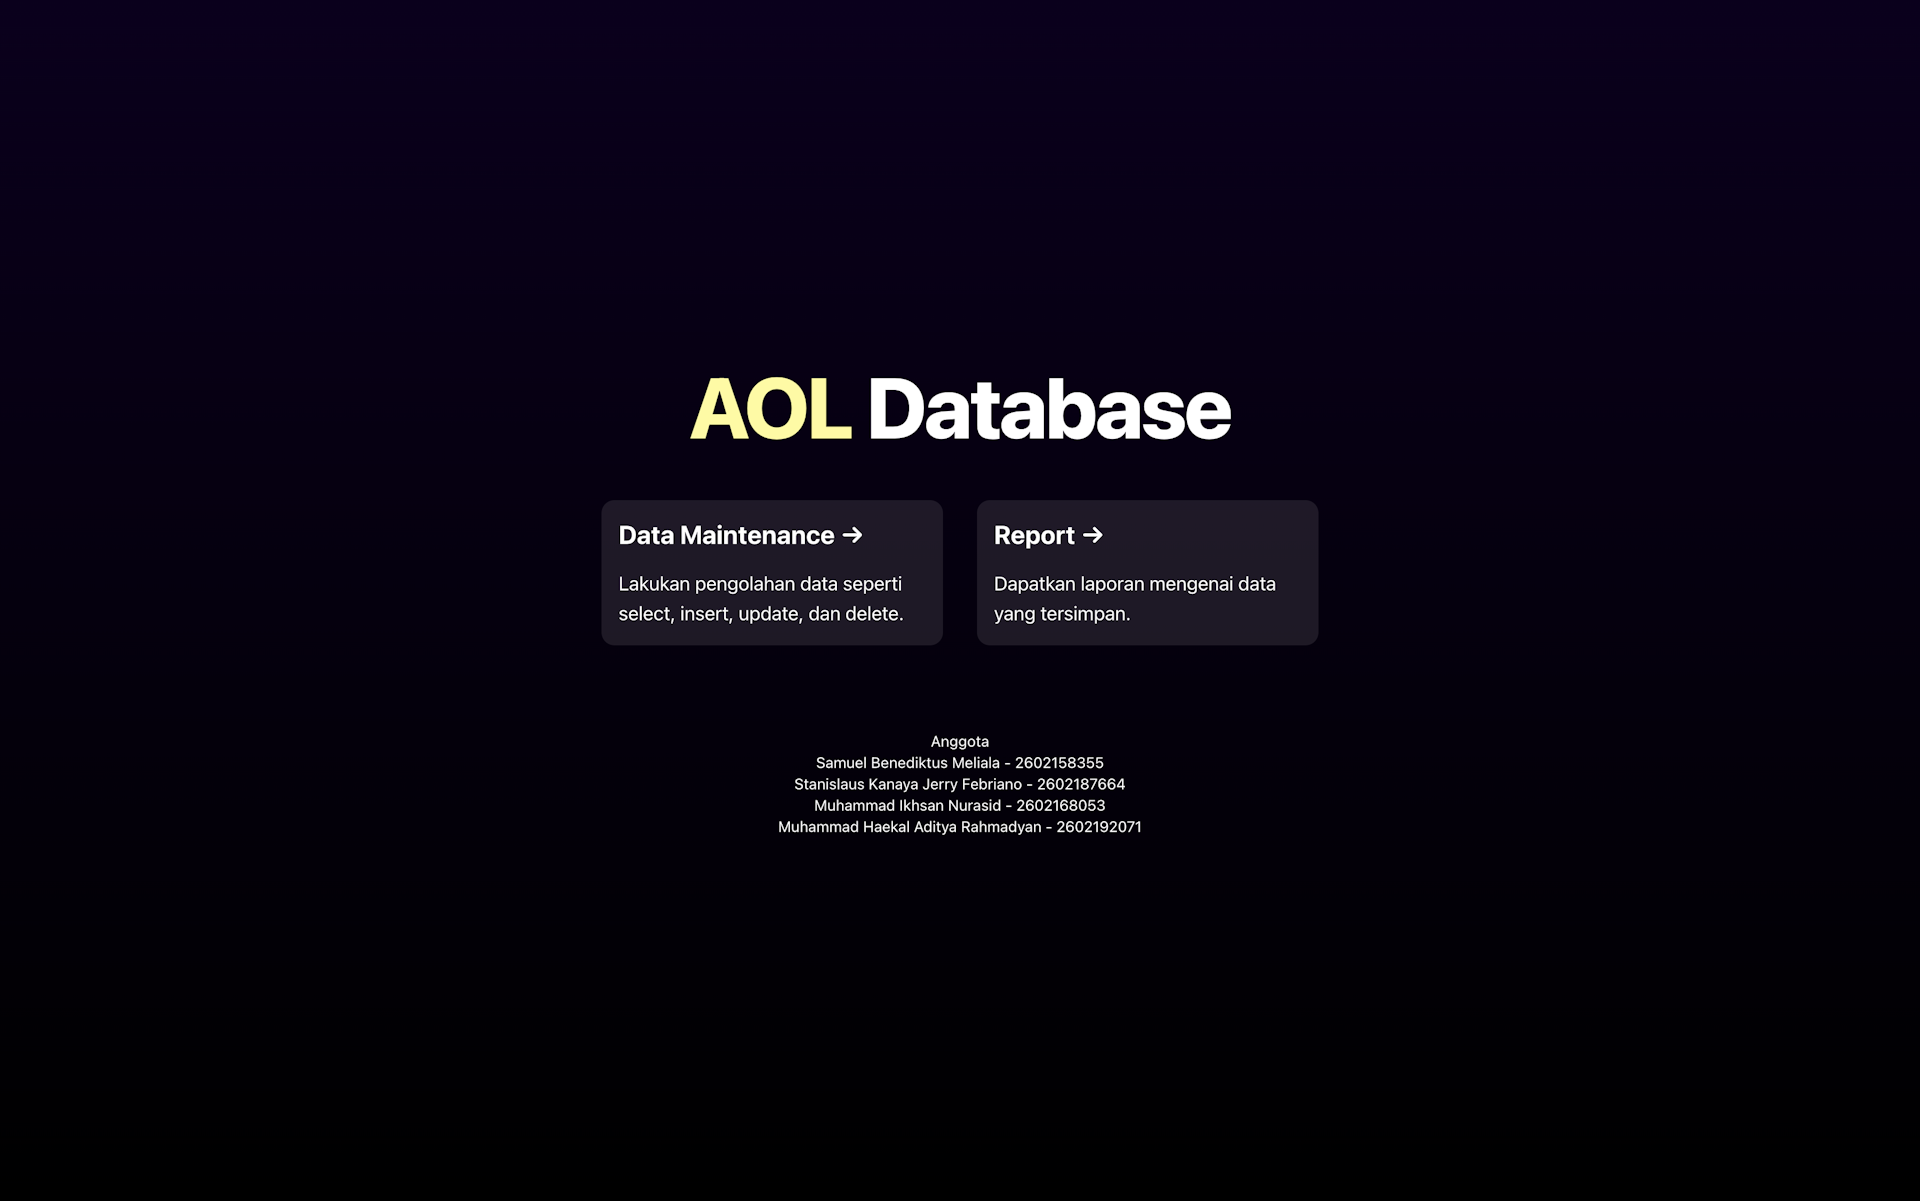 AOL Database